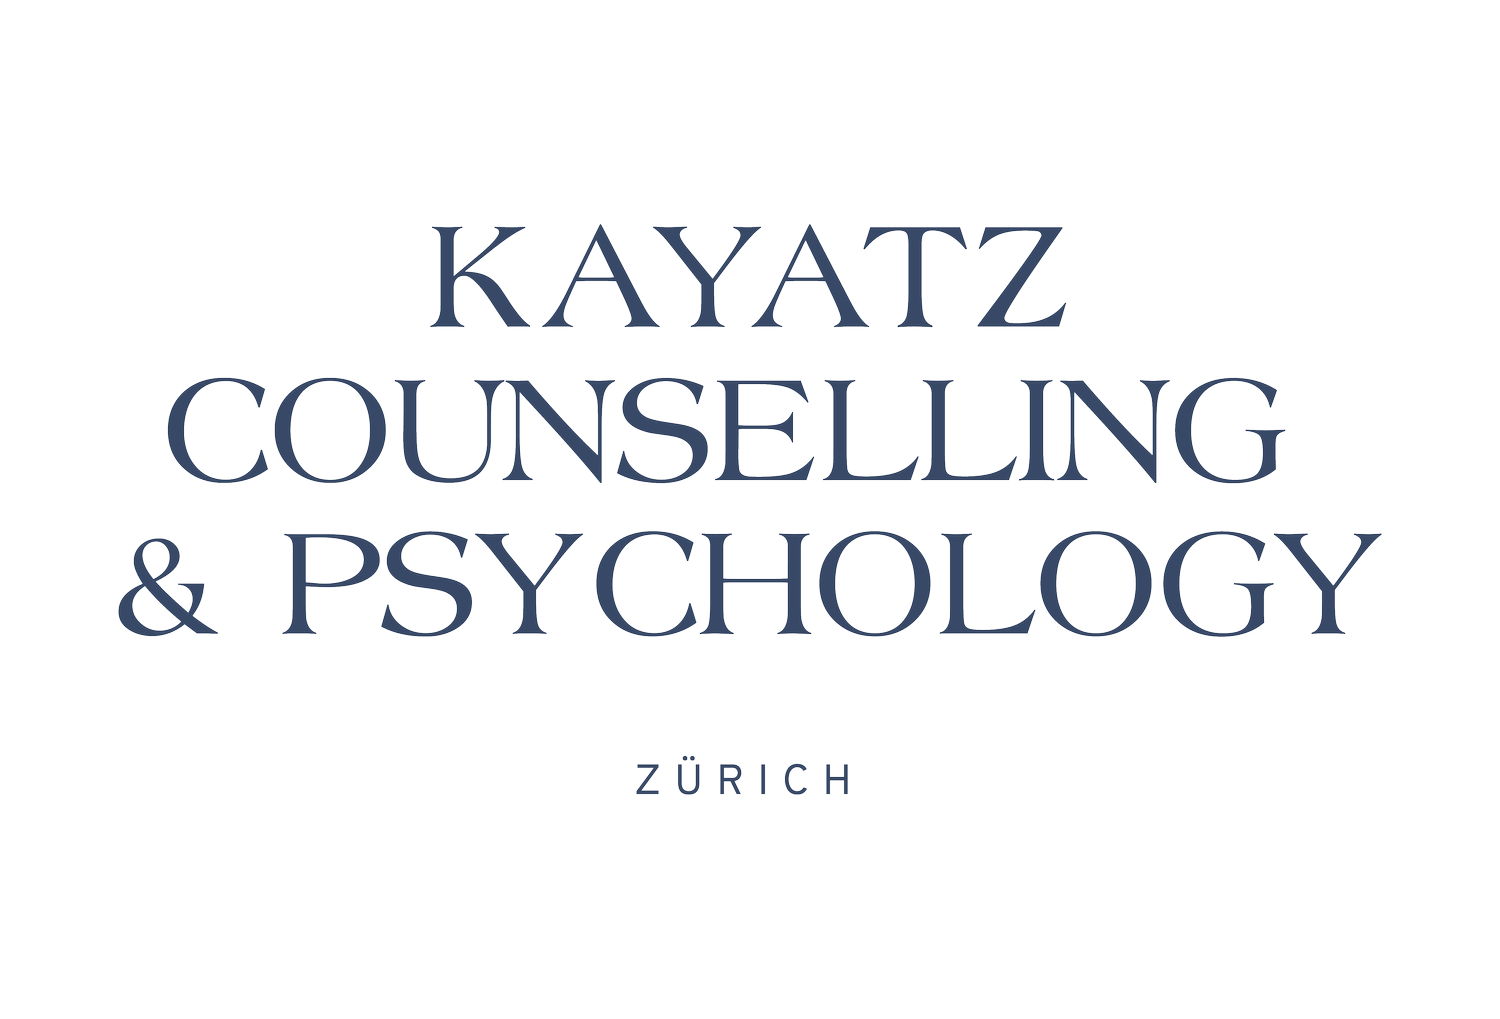 Kayatz counselling &amp; psychology